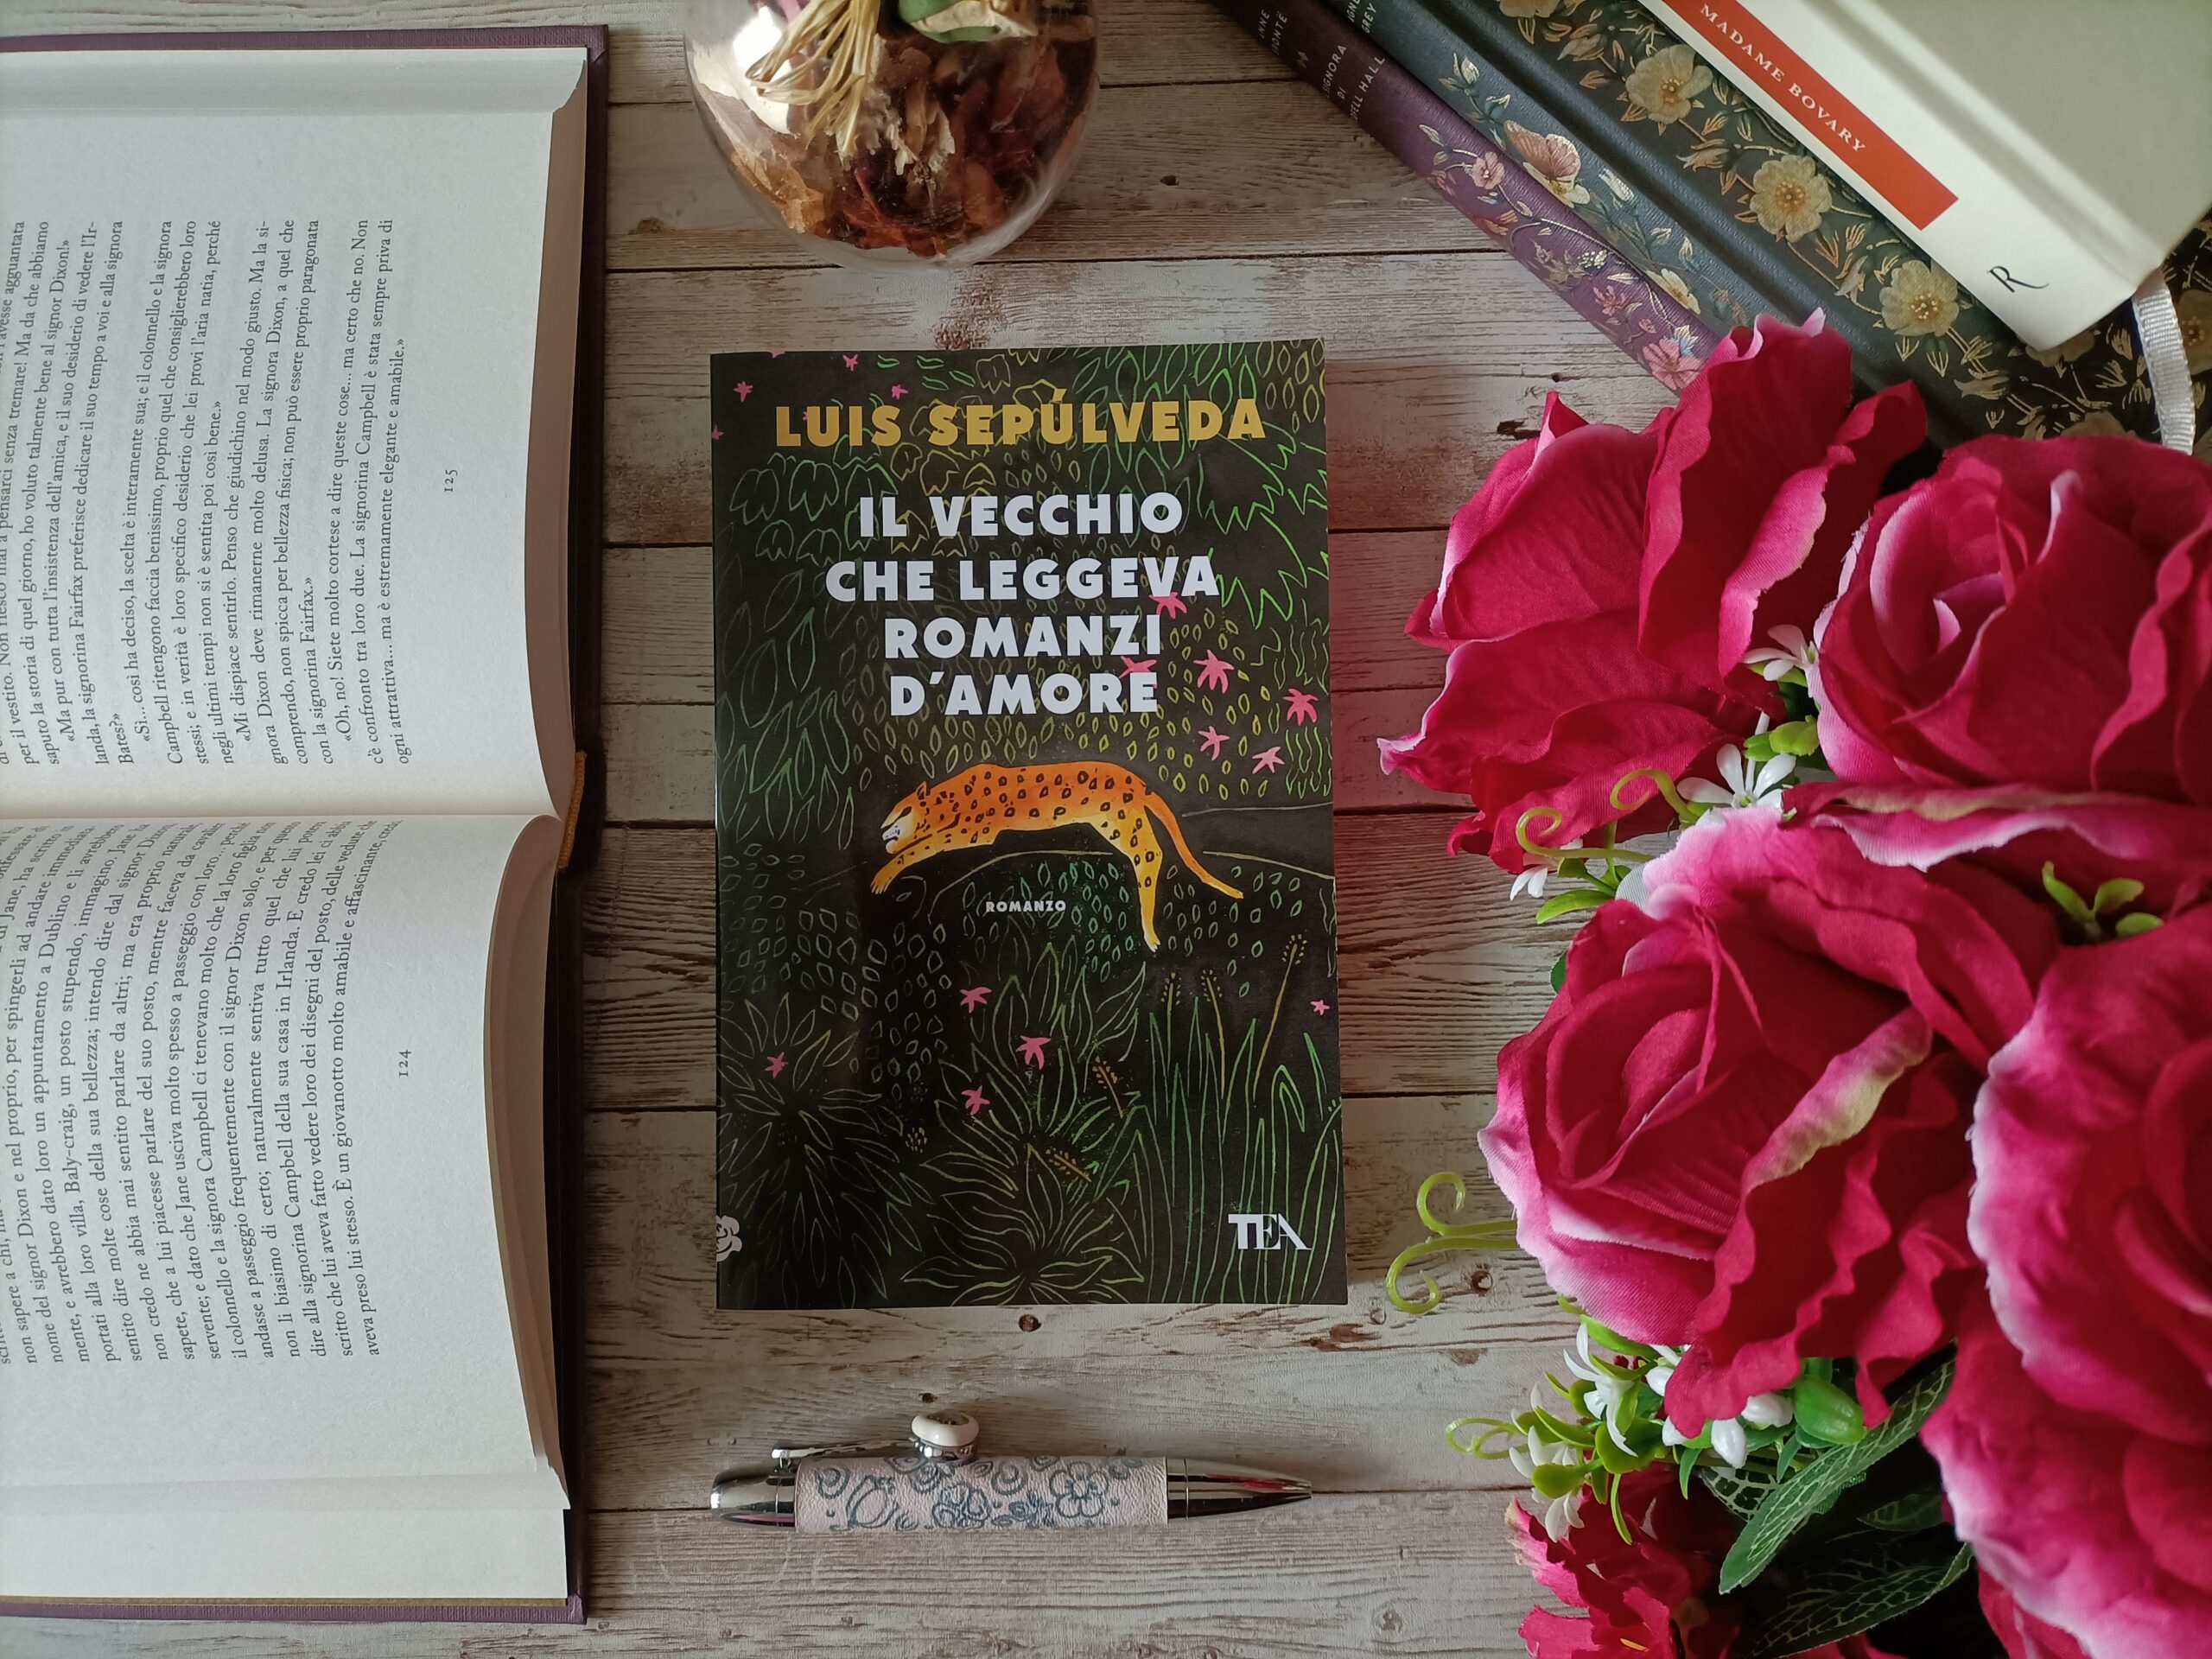 “Il vecchio che leggeva romanzi d’amore” di Luis Sepulveda